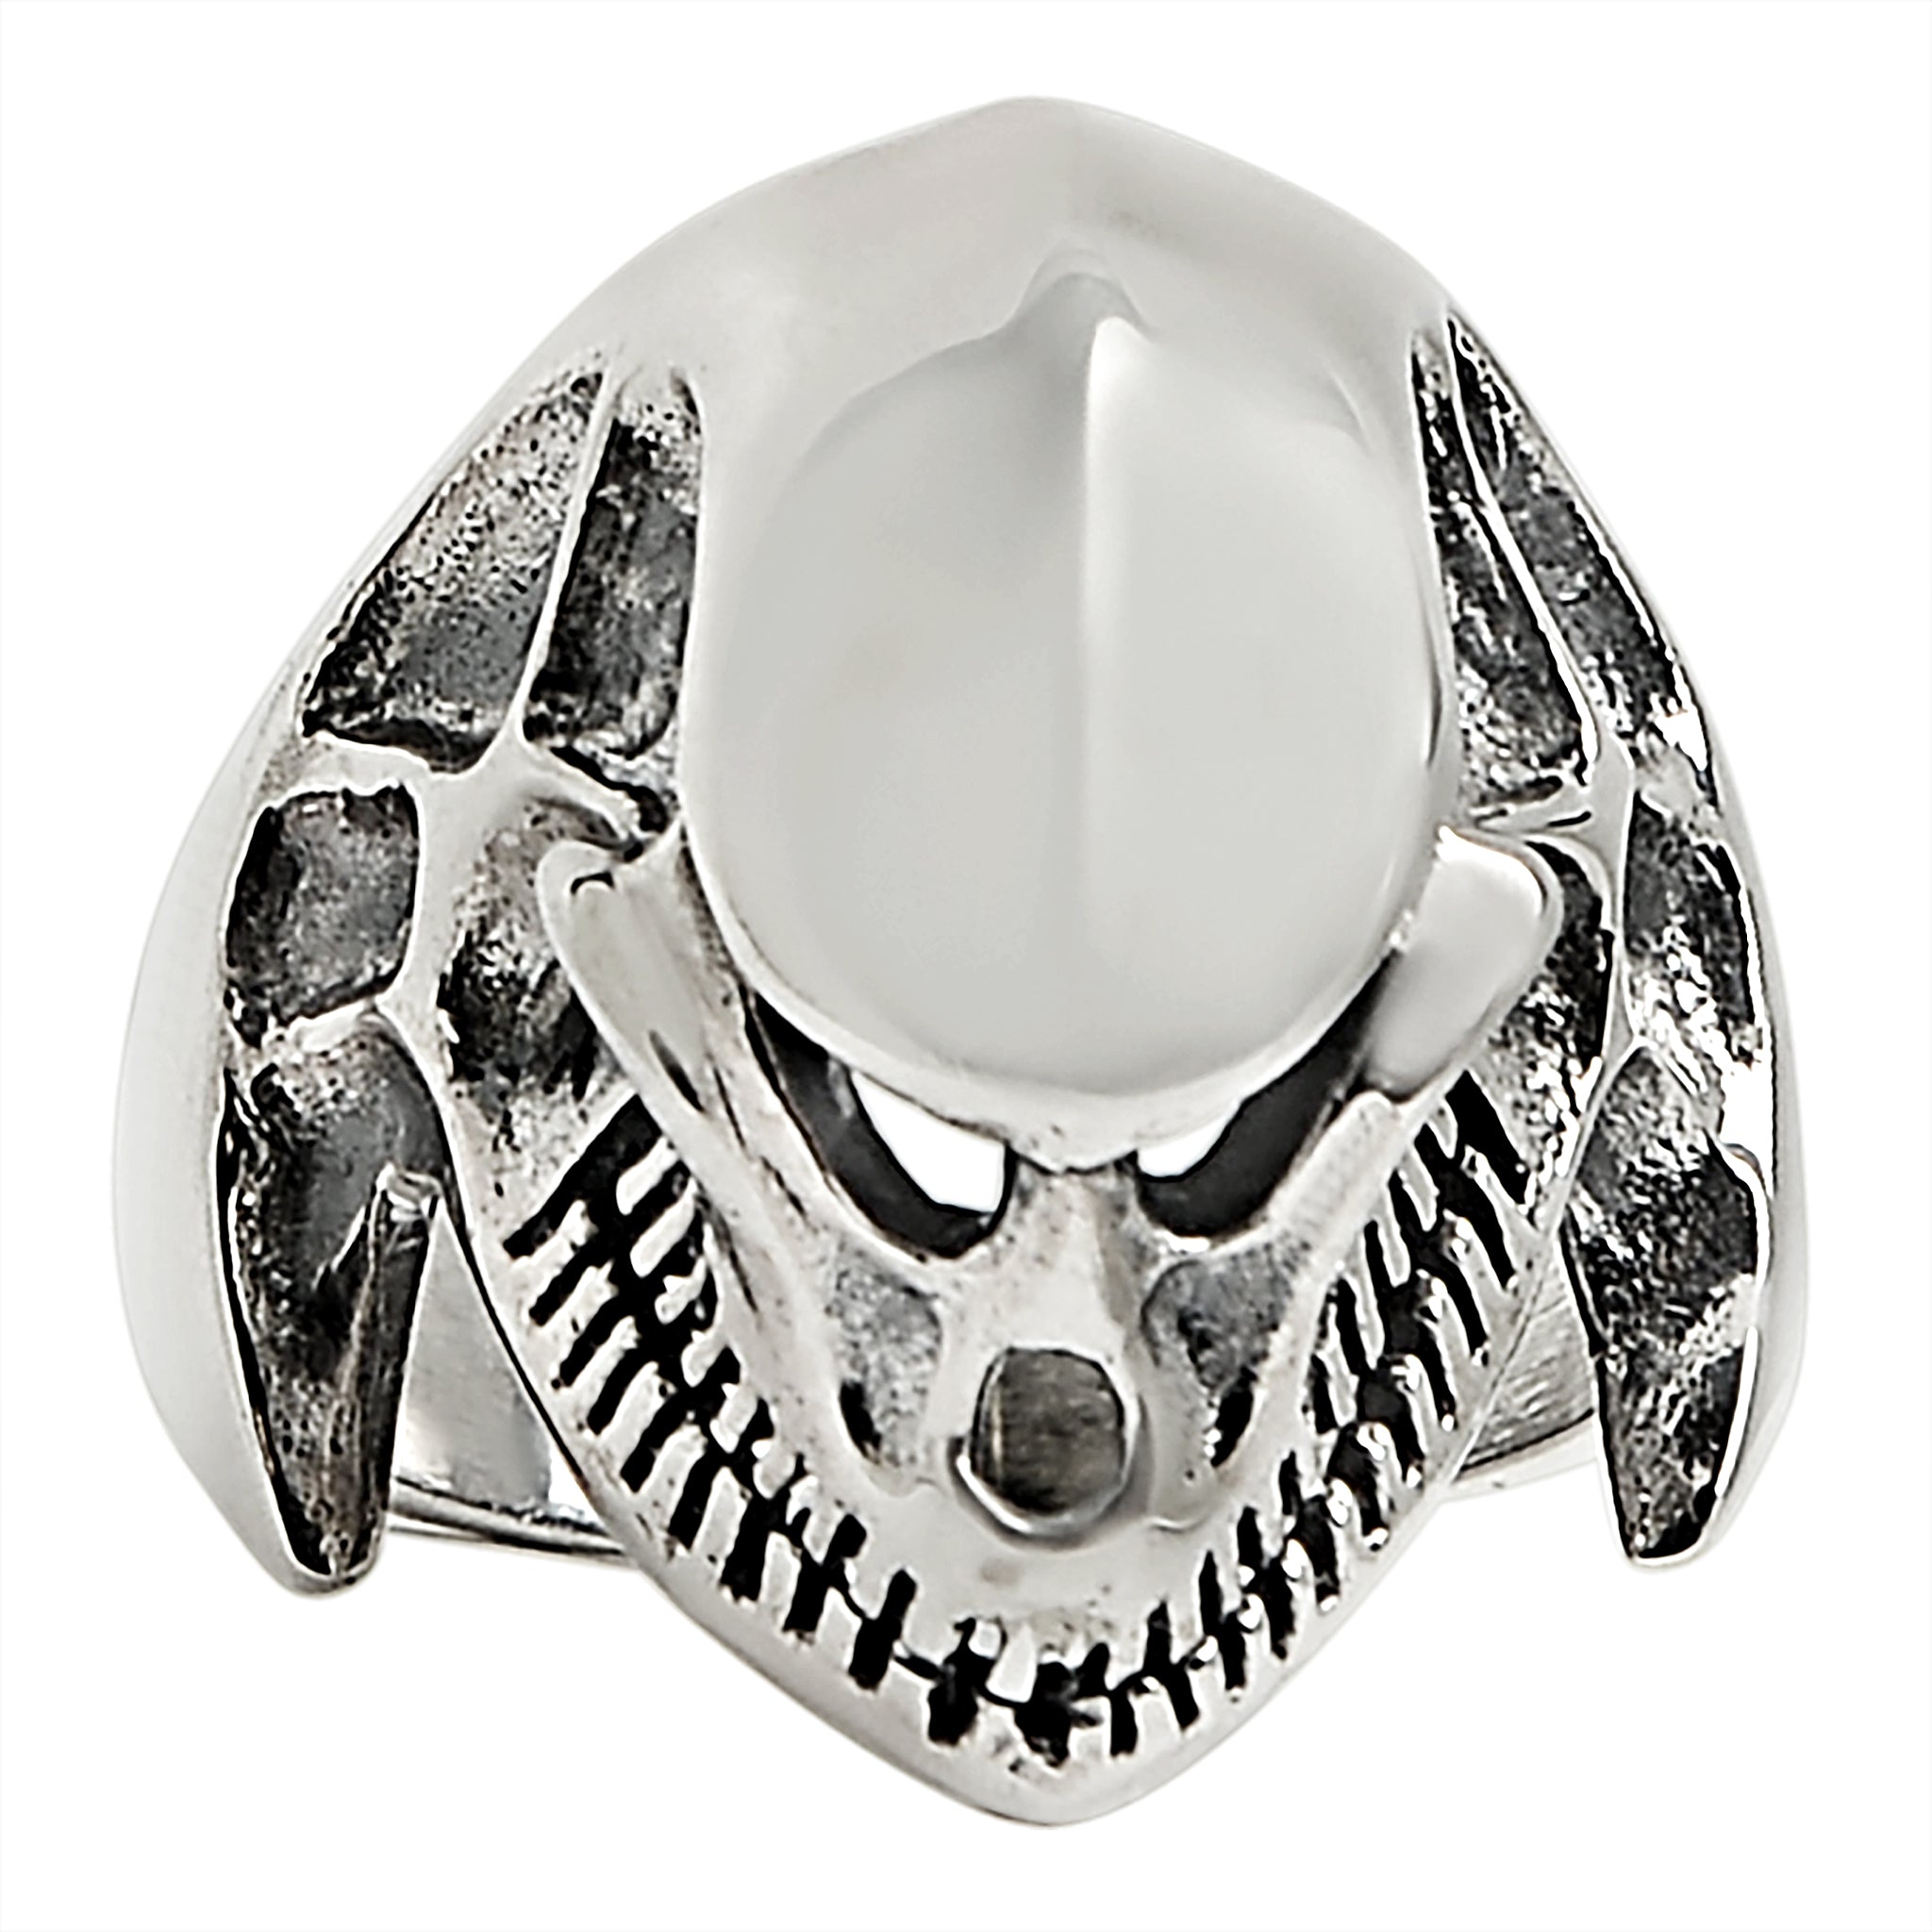 Sterling Silver Alien Skull Ring / SSR0062-sterling silver pendant- .925 sterling silver pendant- Black Friday Gift- silver pendant- necklace pendant